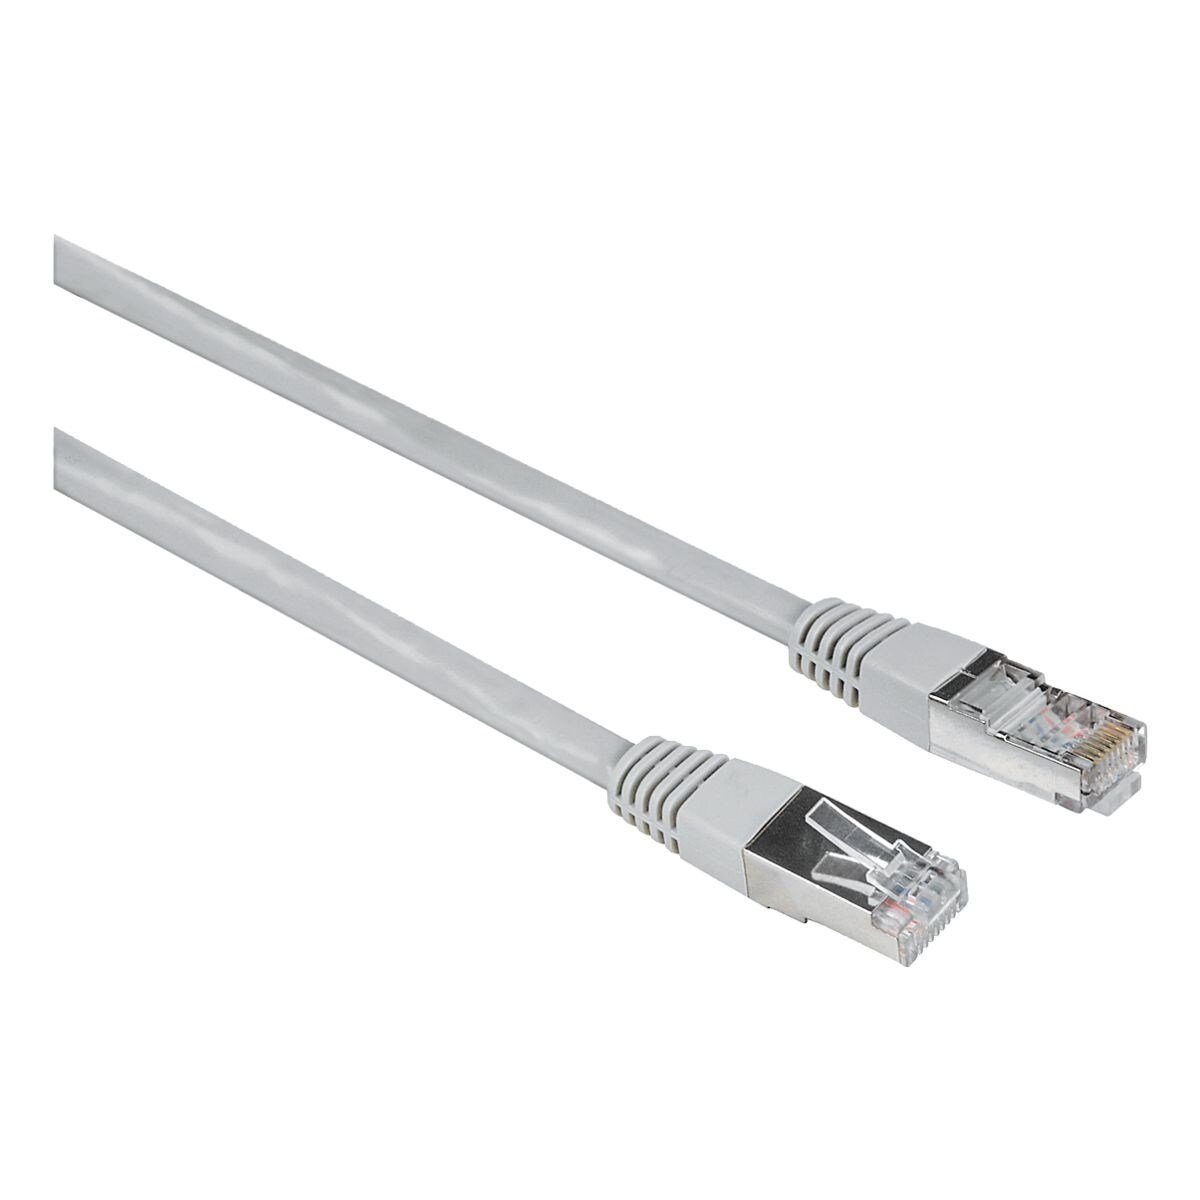 Hama LAN-Kabel, 2x RJ45, LAN / Router / Switch / Hub / Wanddose (300 cm),  CAT-5e online kaufen | OTTO